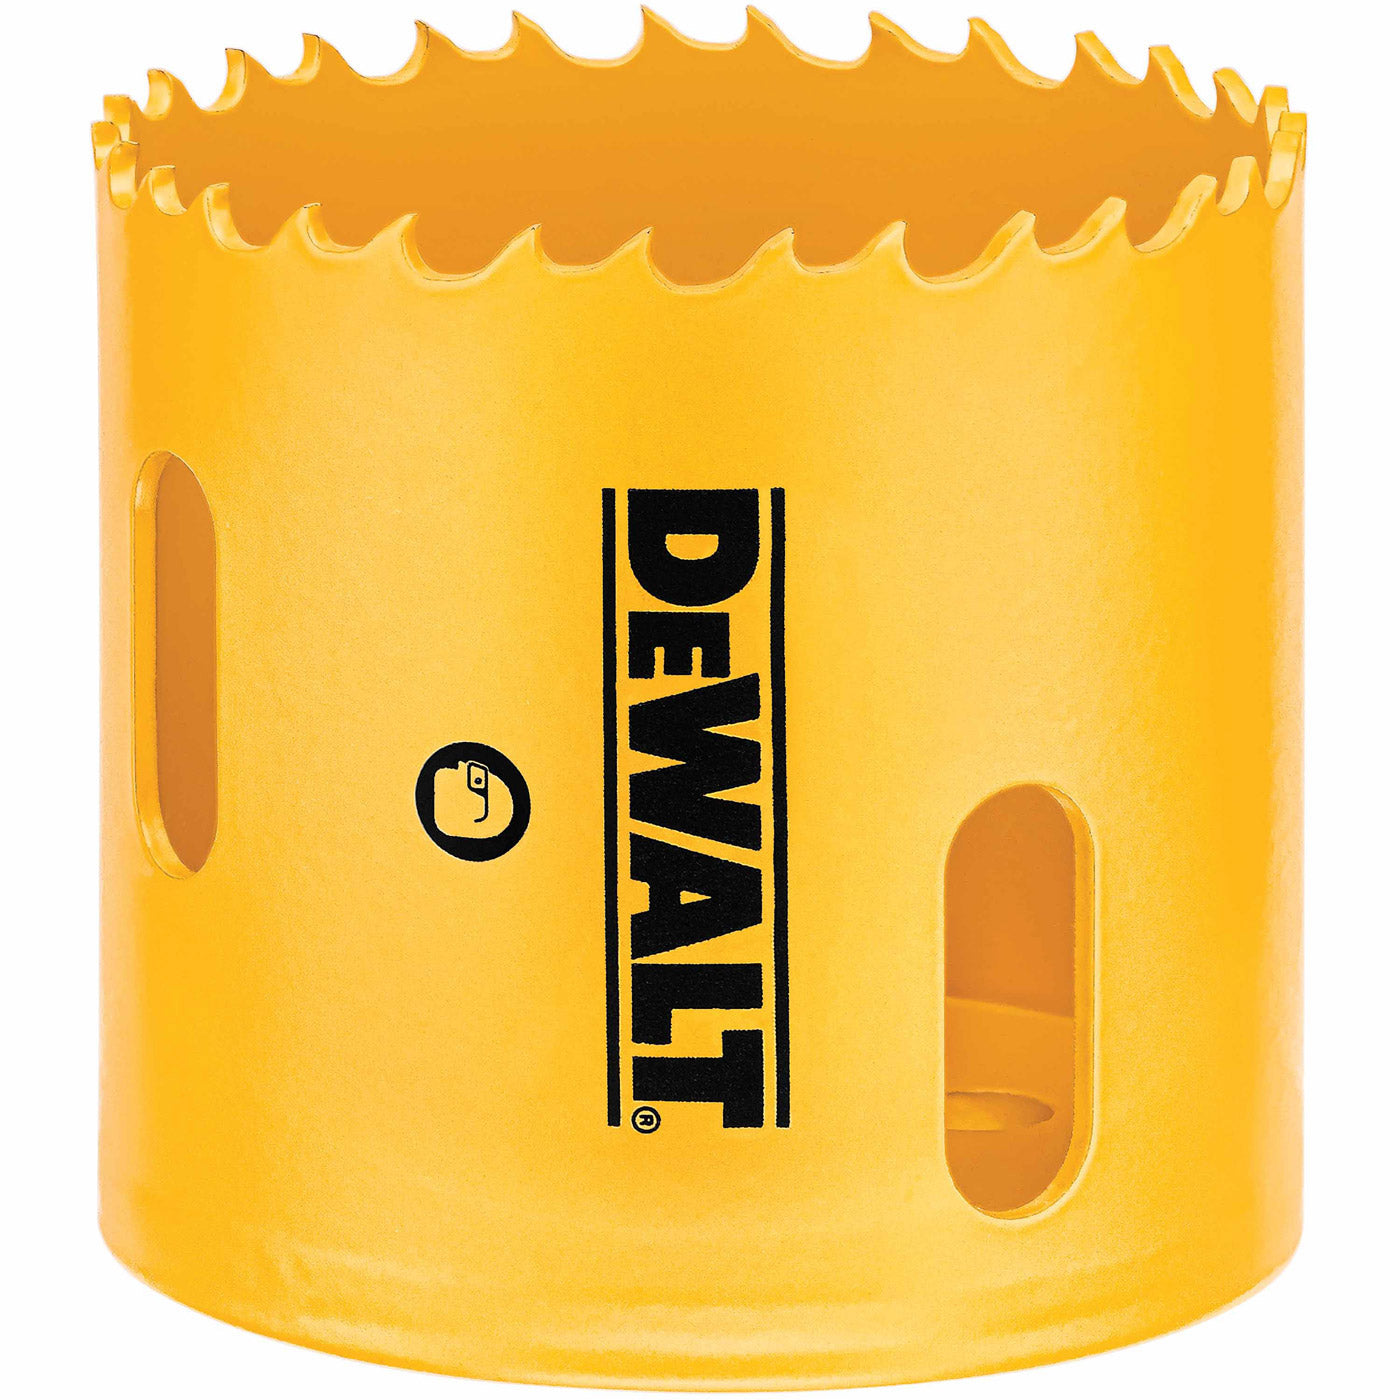 DeWalt D180044 2-3/4" (70mm) Bi-Metal Hole Saw